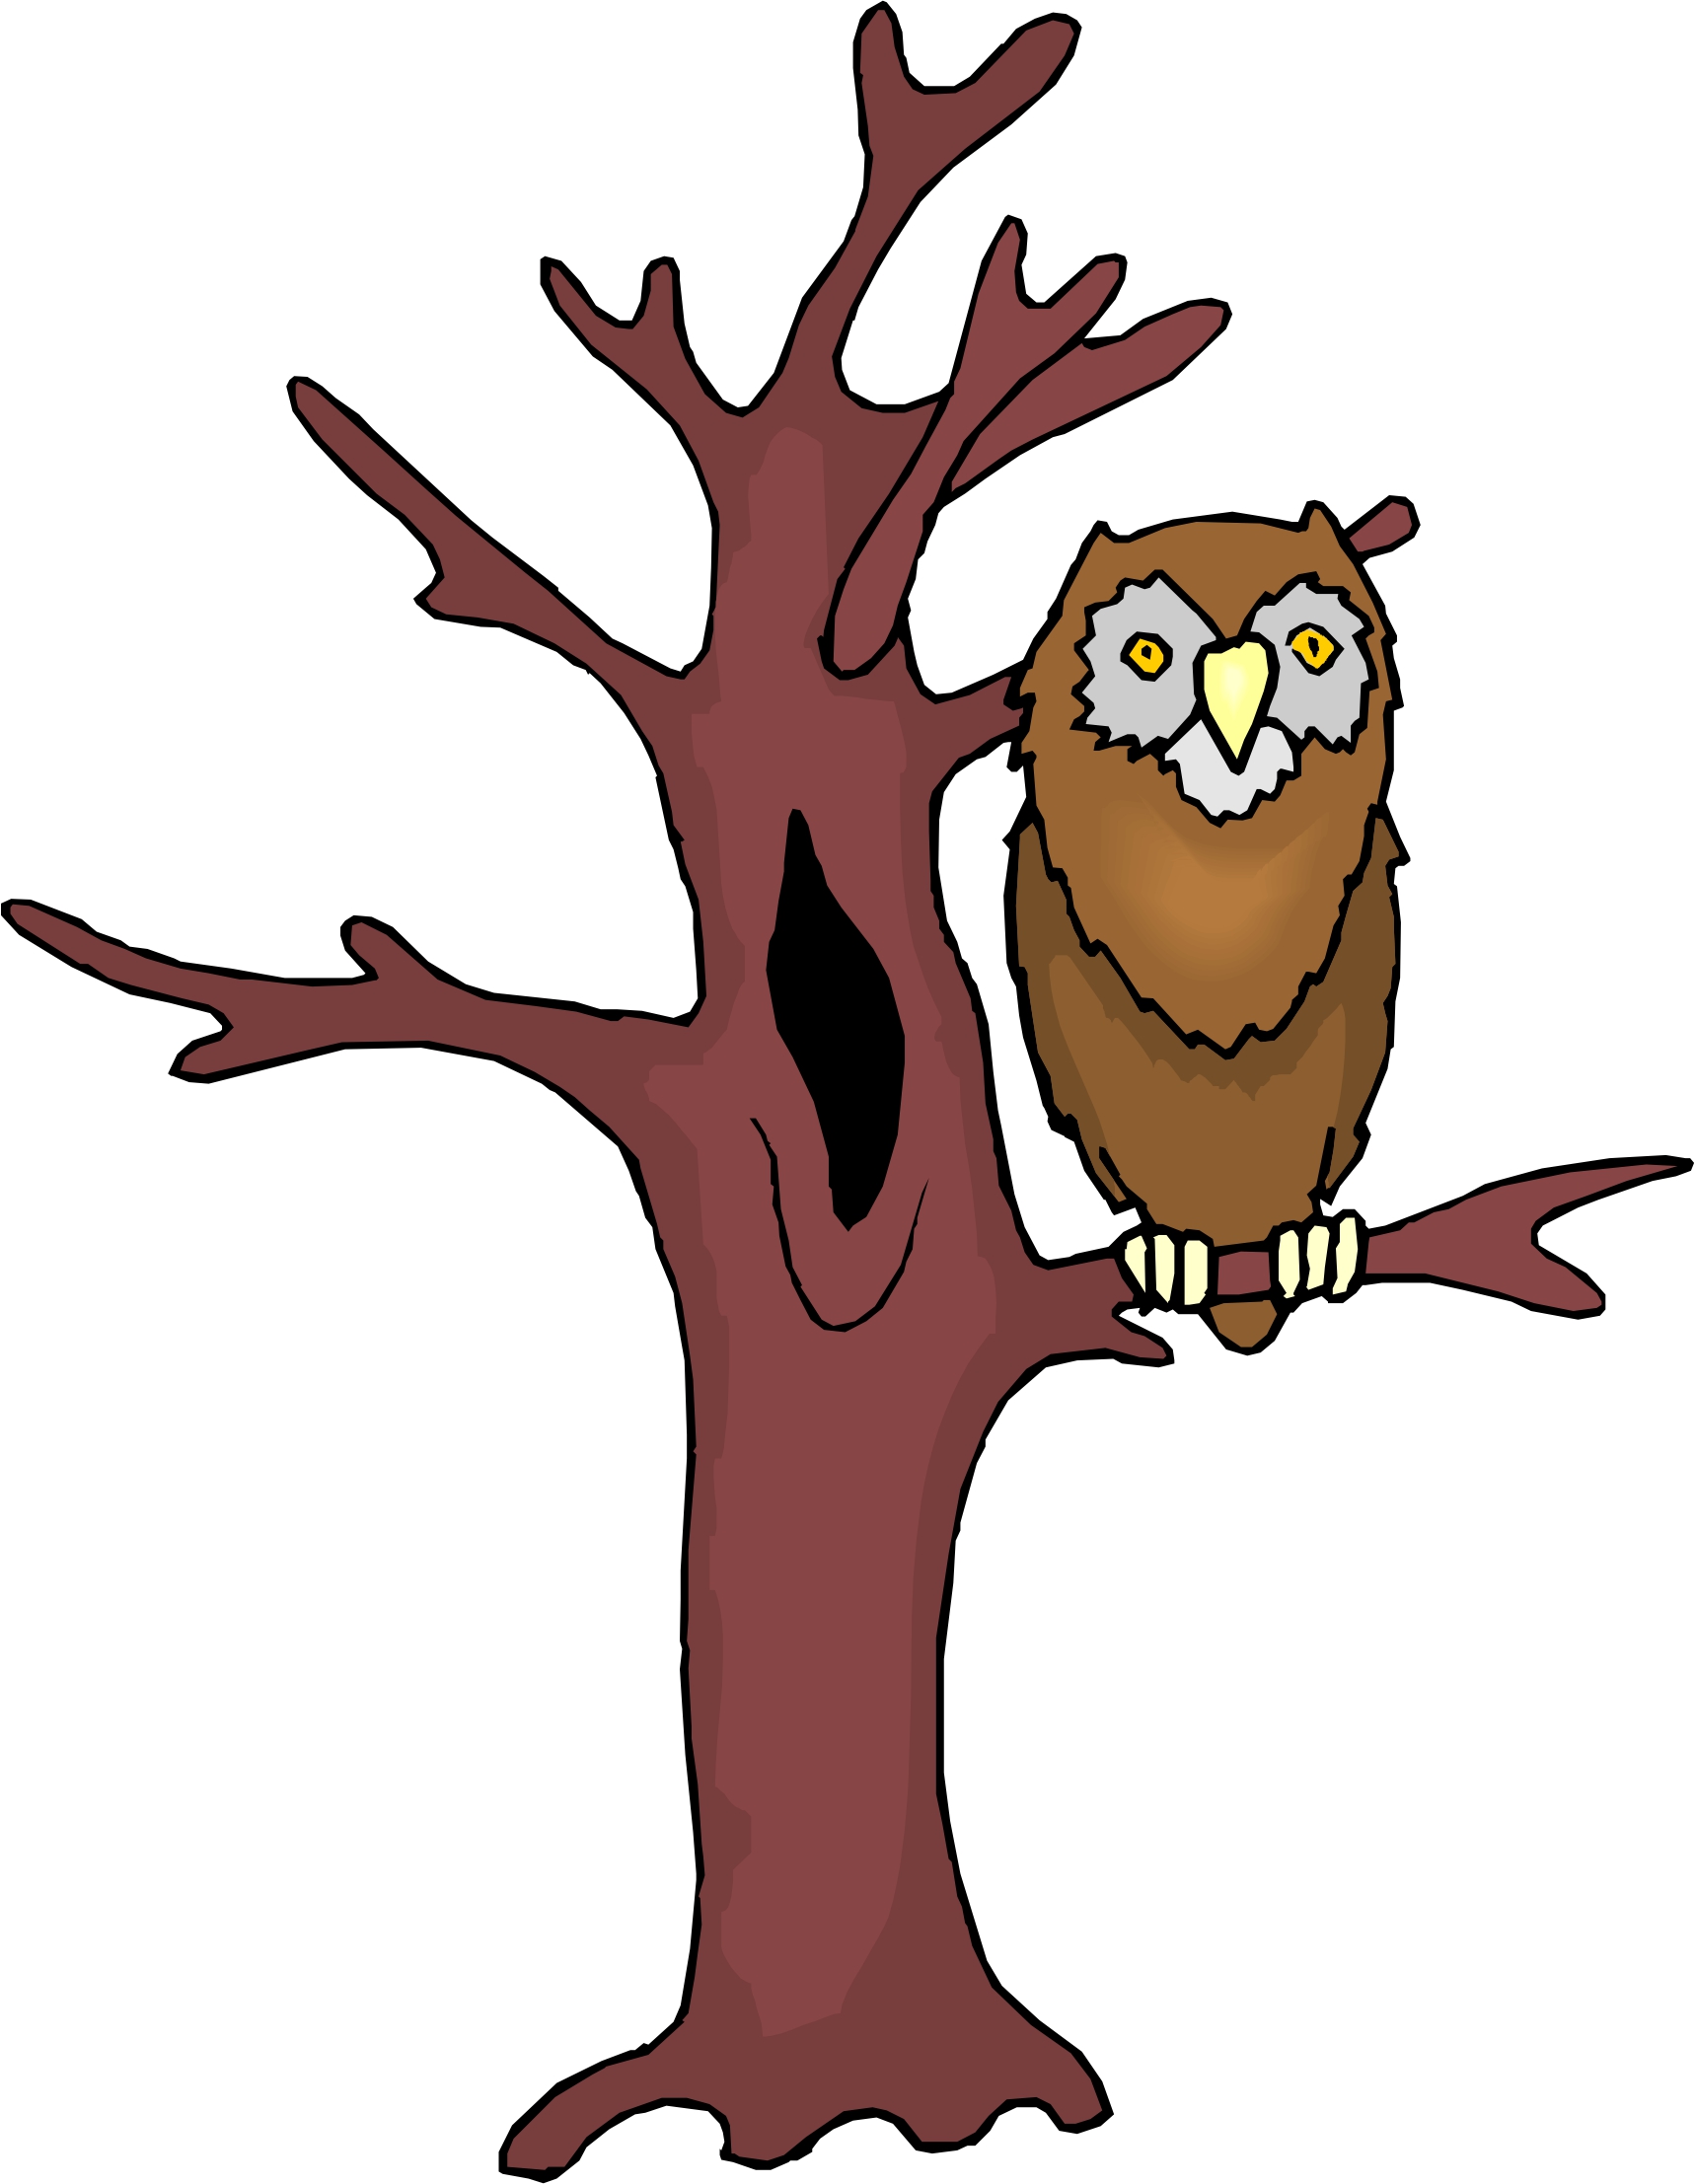 Cartoon Owl On Tree | Chainimage